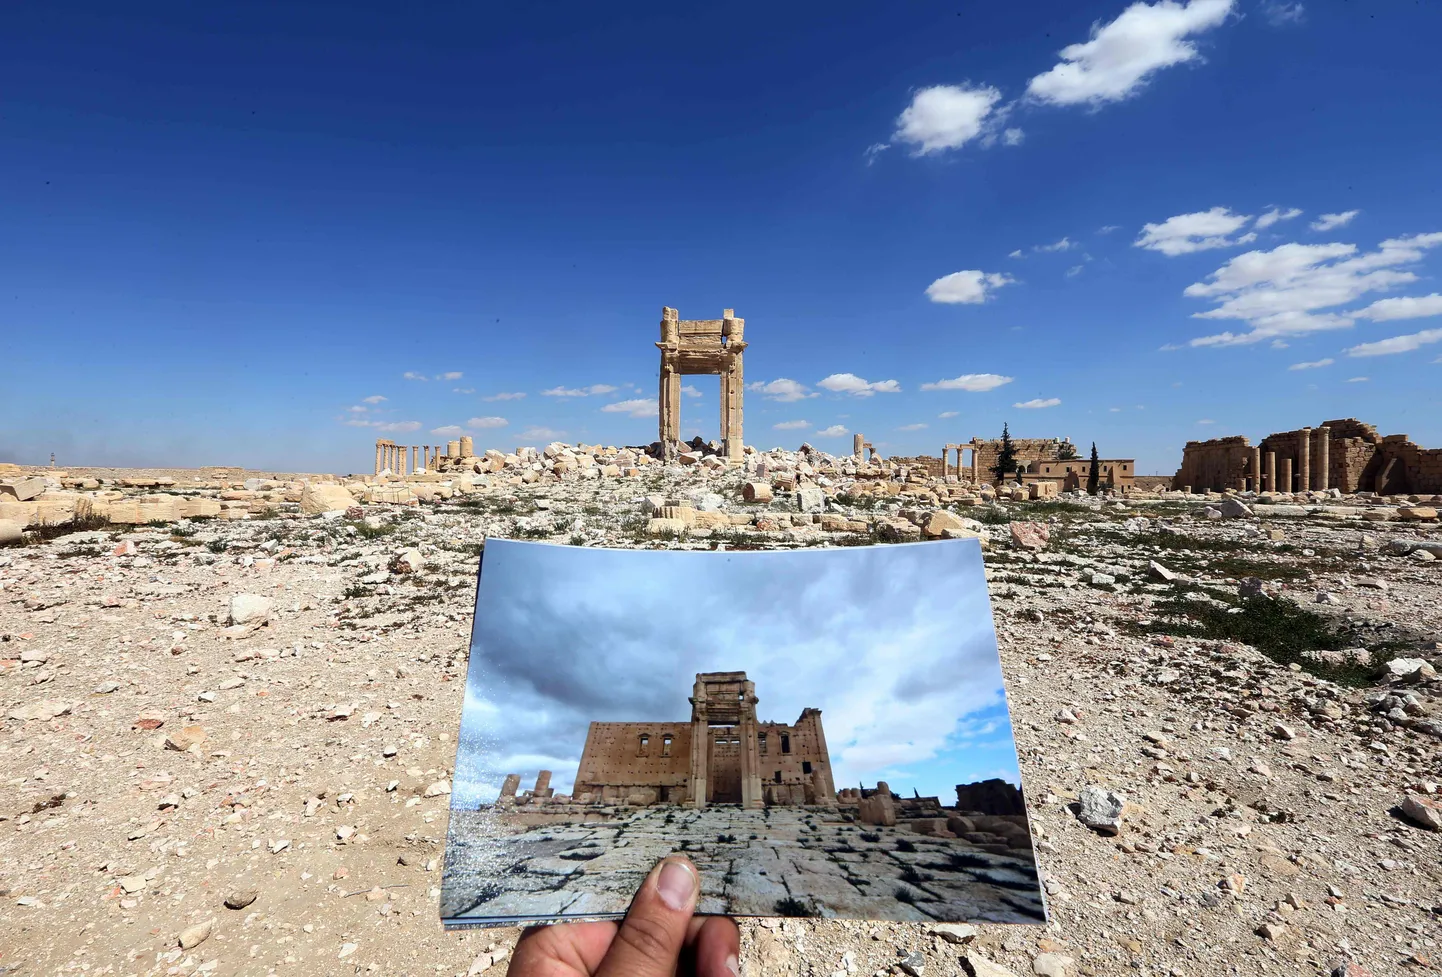 Pildil hoiab fotograaf Joseph Eid käes pilti Beli templist Palmyras, foto on tehtud 2014. aastal. Taustal on tempel kaks aastat hiljem hävinuna.